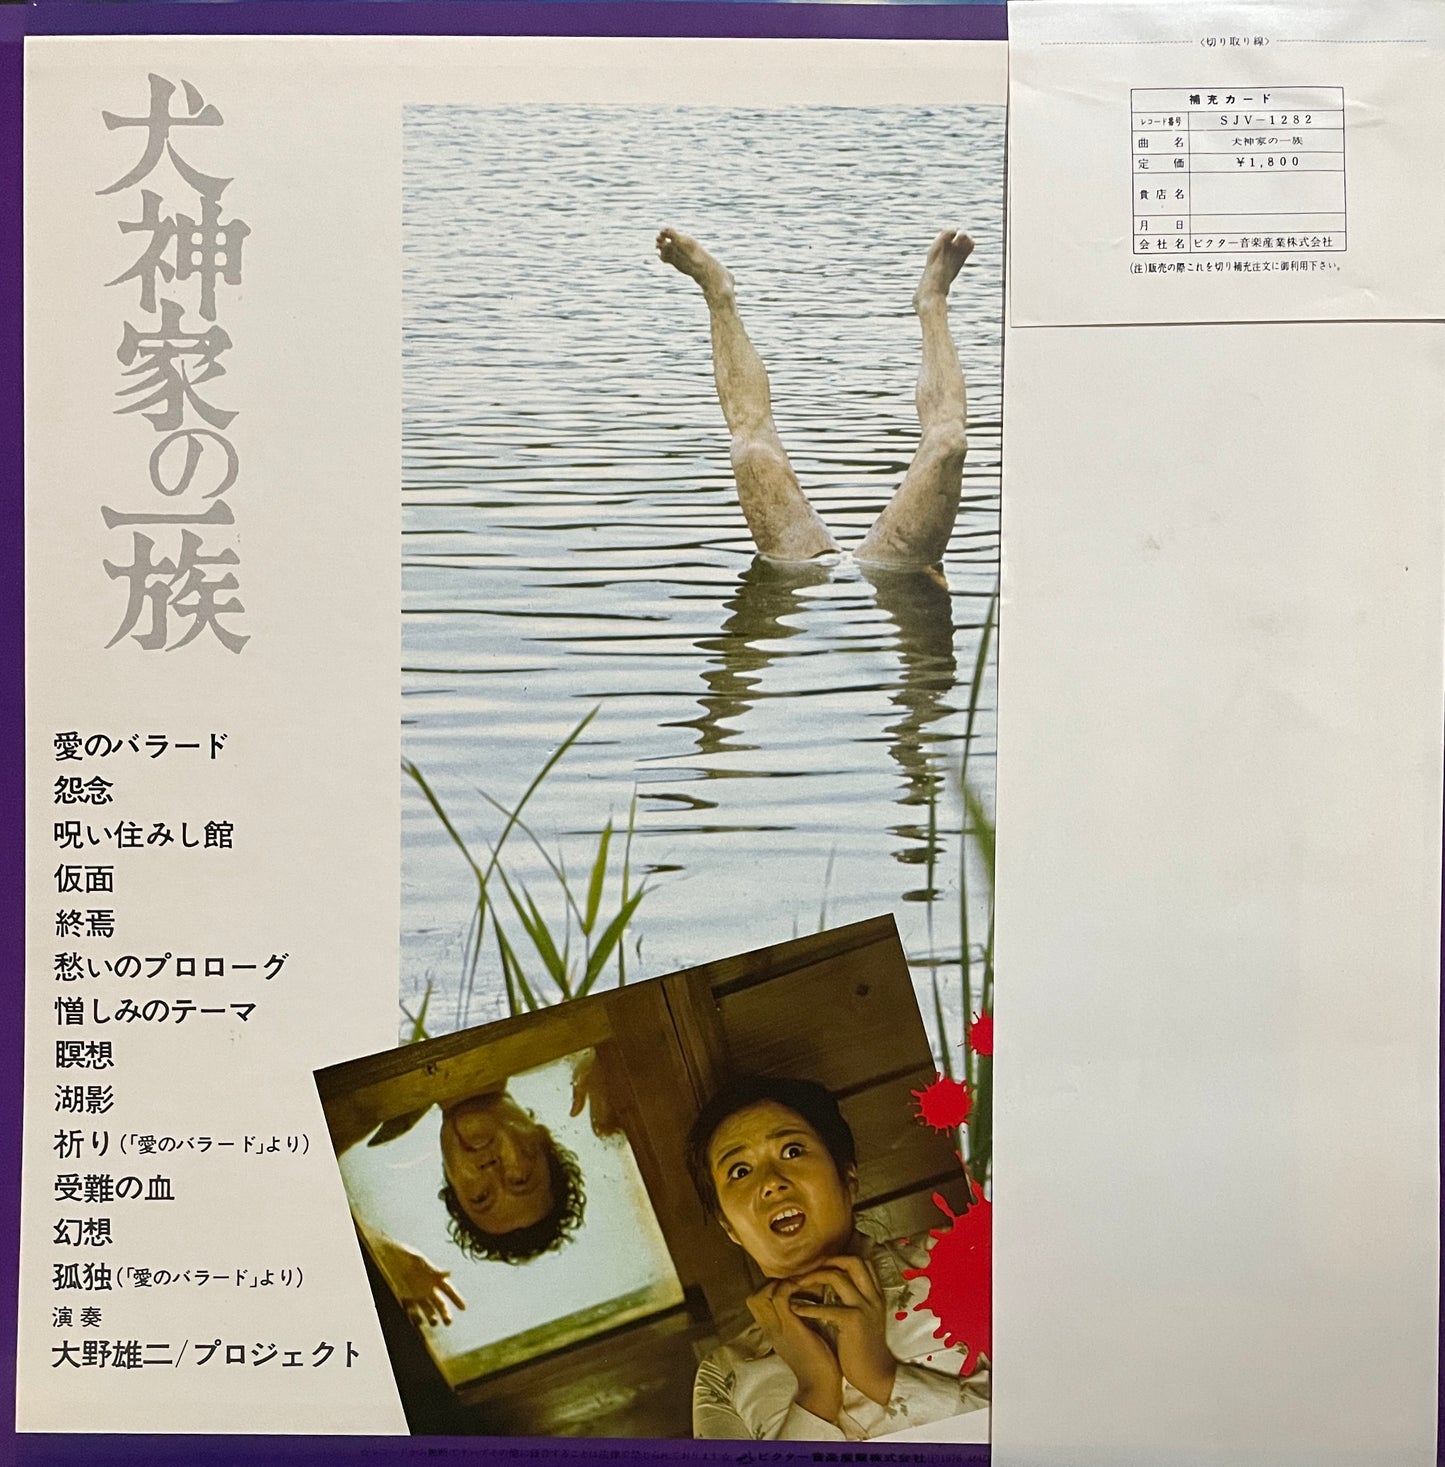 Yuji Ohno "犬神家の一族" (1976)